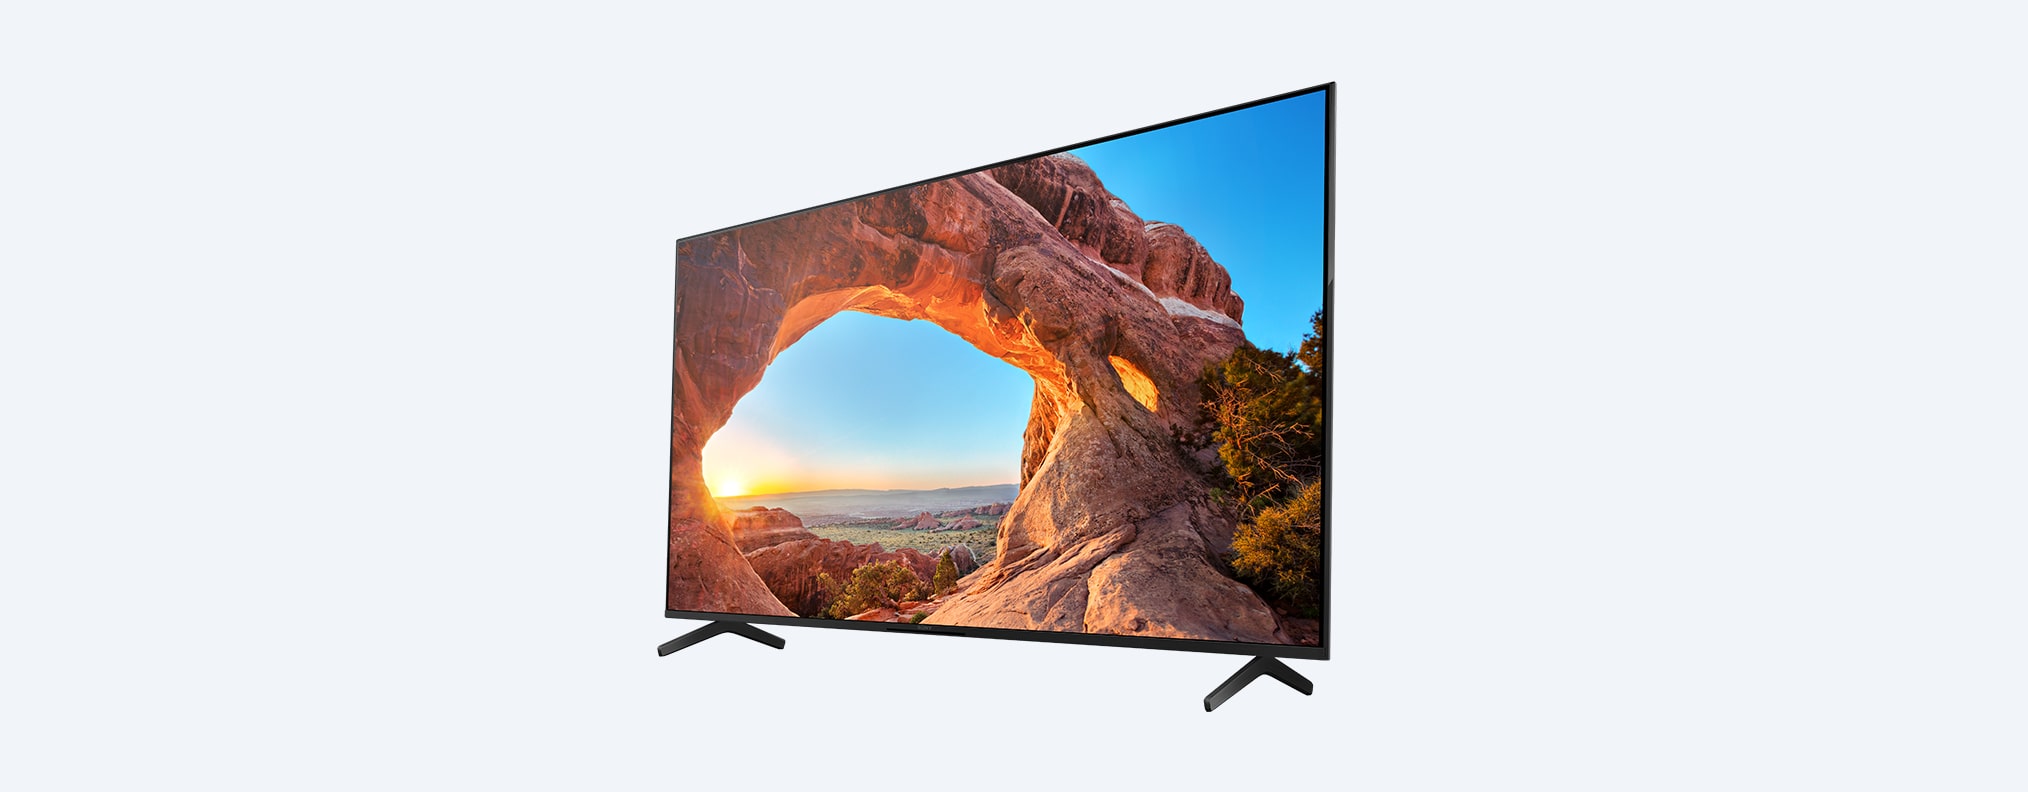 X85J | 4K Ultra HD | טווח דינמי גבוה (HDR) | טלוויזיה חכמה (Google TV)